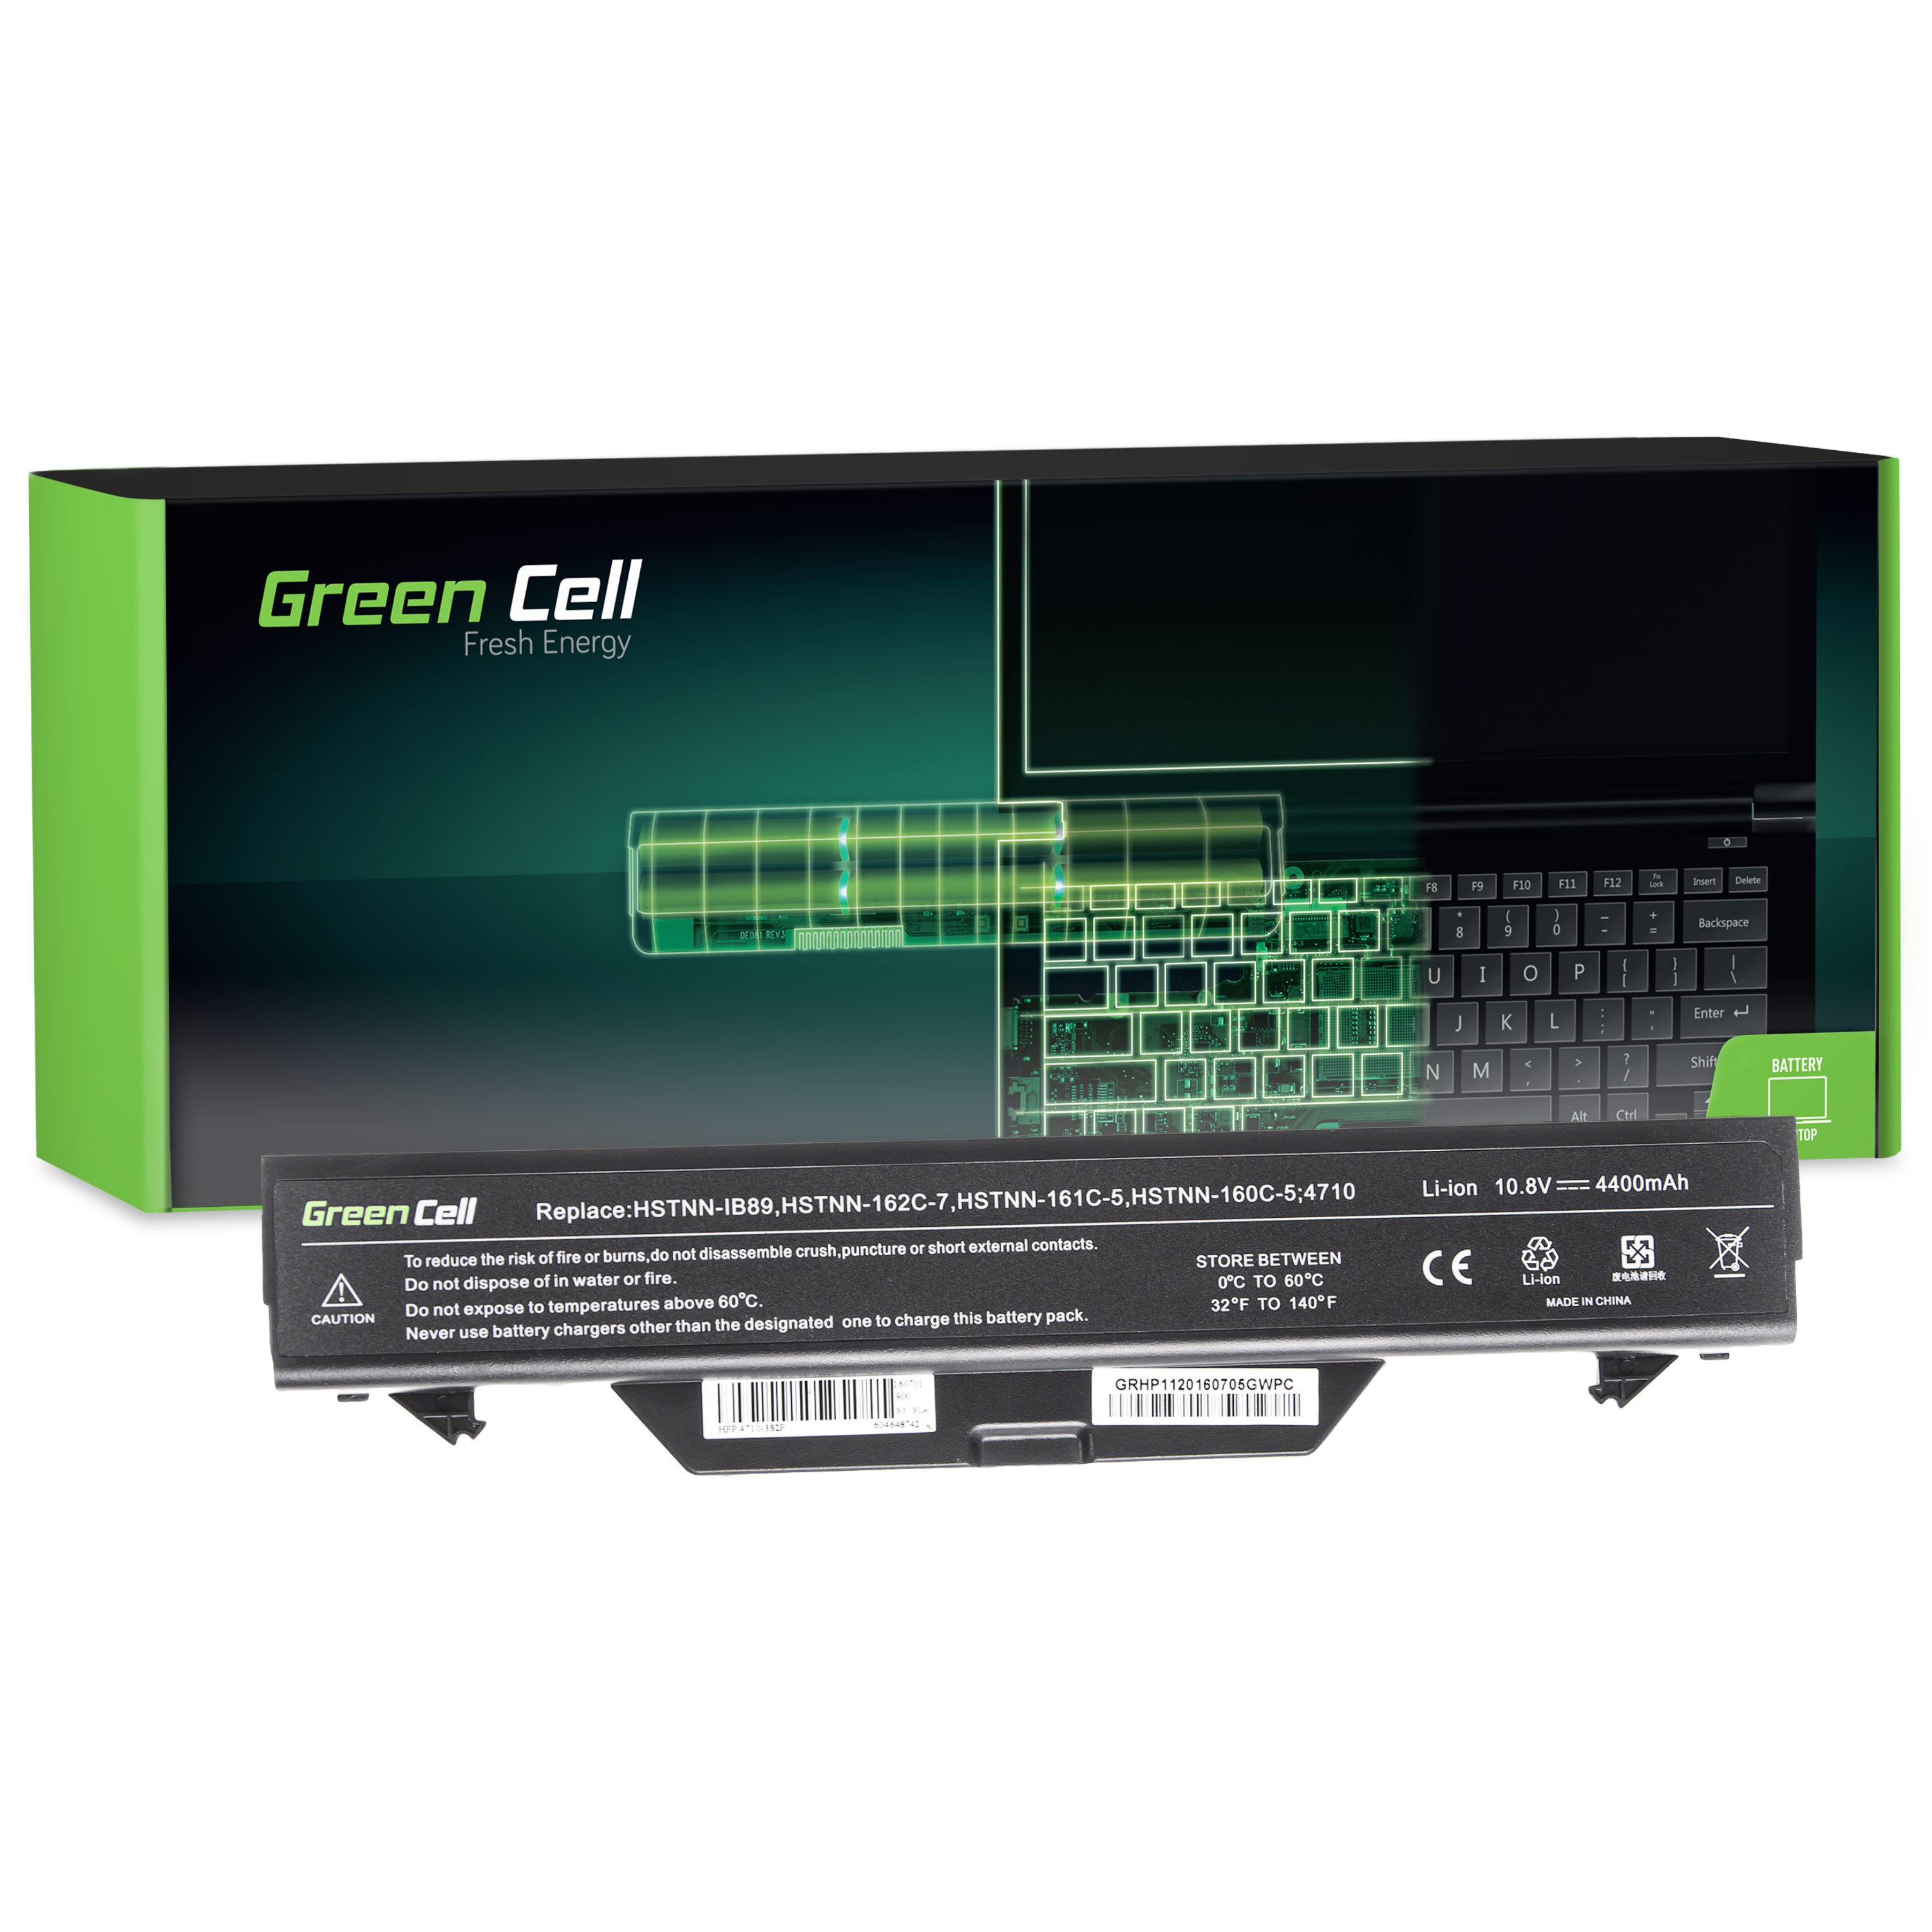 Green Cell laptopbatteri til HP Probook 4510 4510s 4515s 4710s 4720s